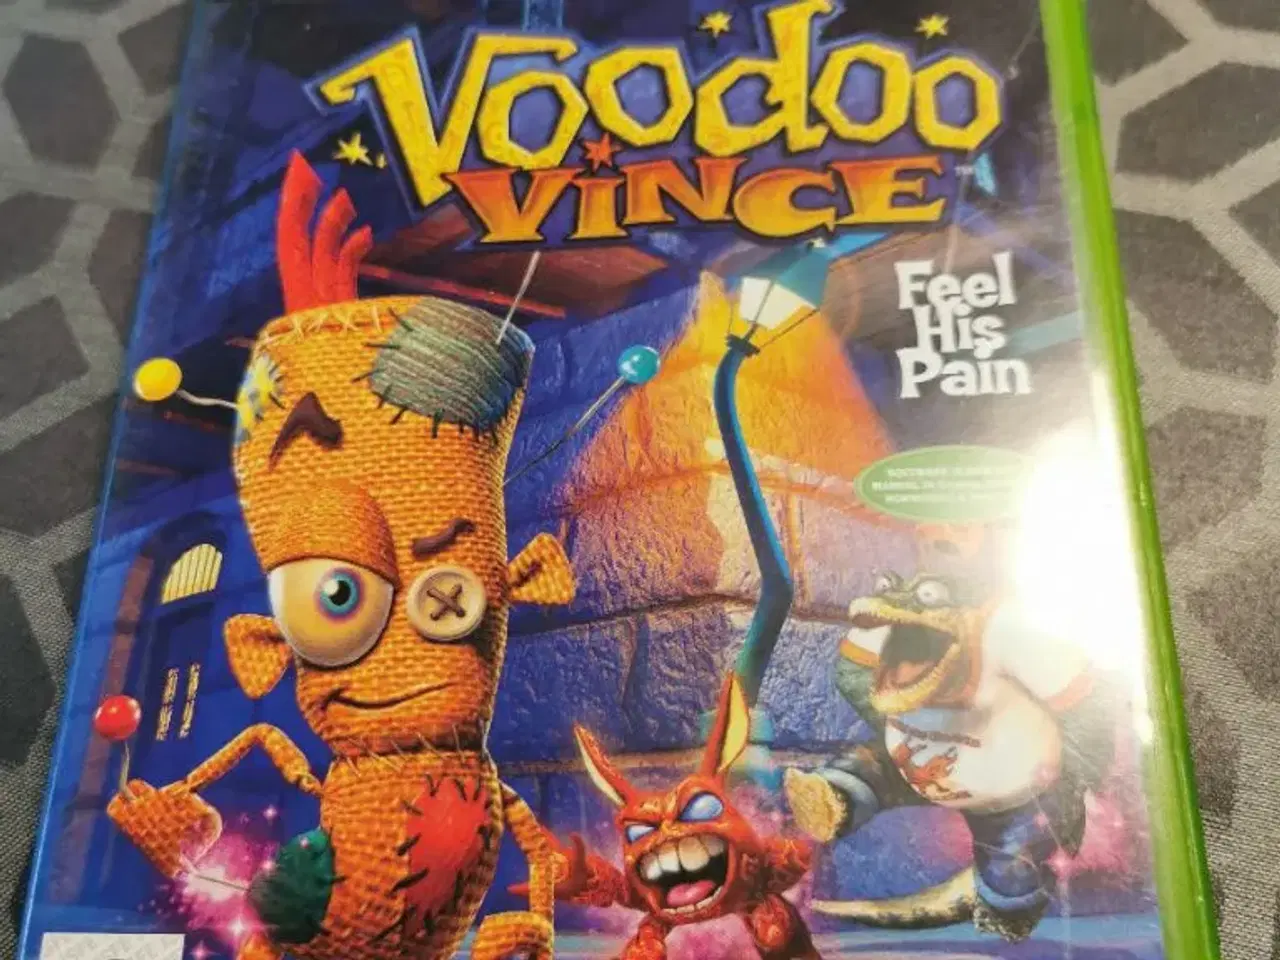 Billede 1 - Voodoo Vince Feel his pain.